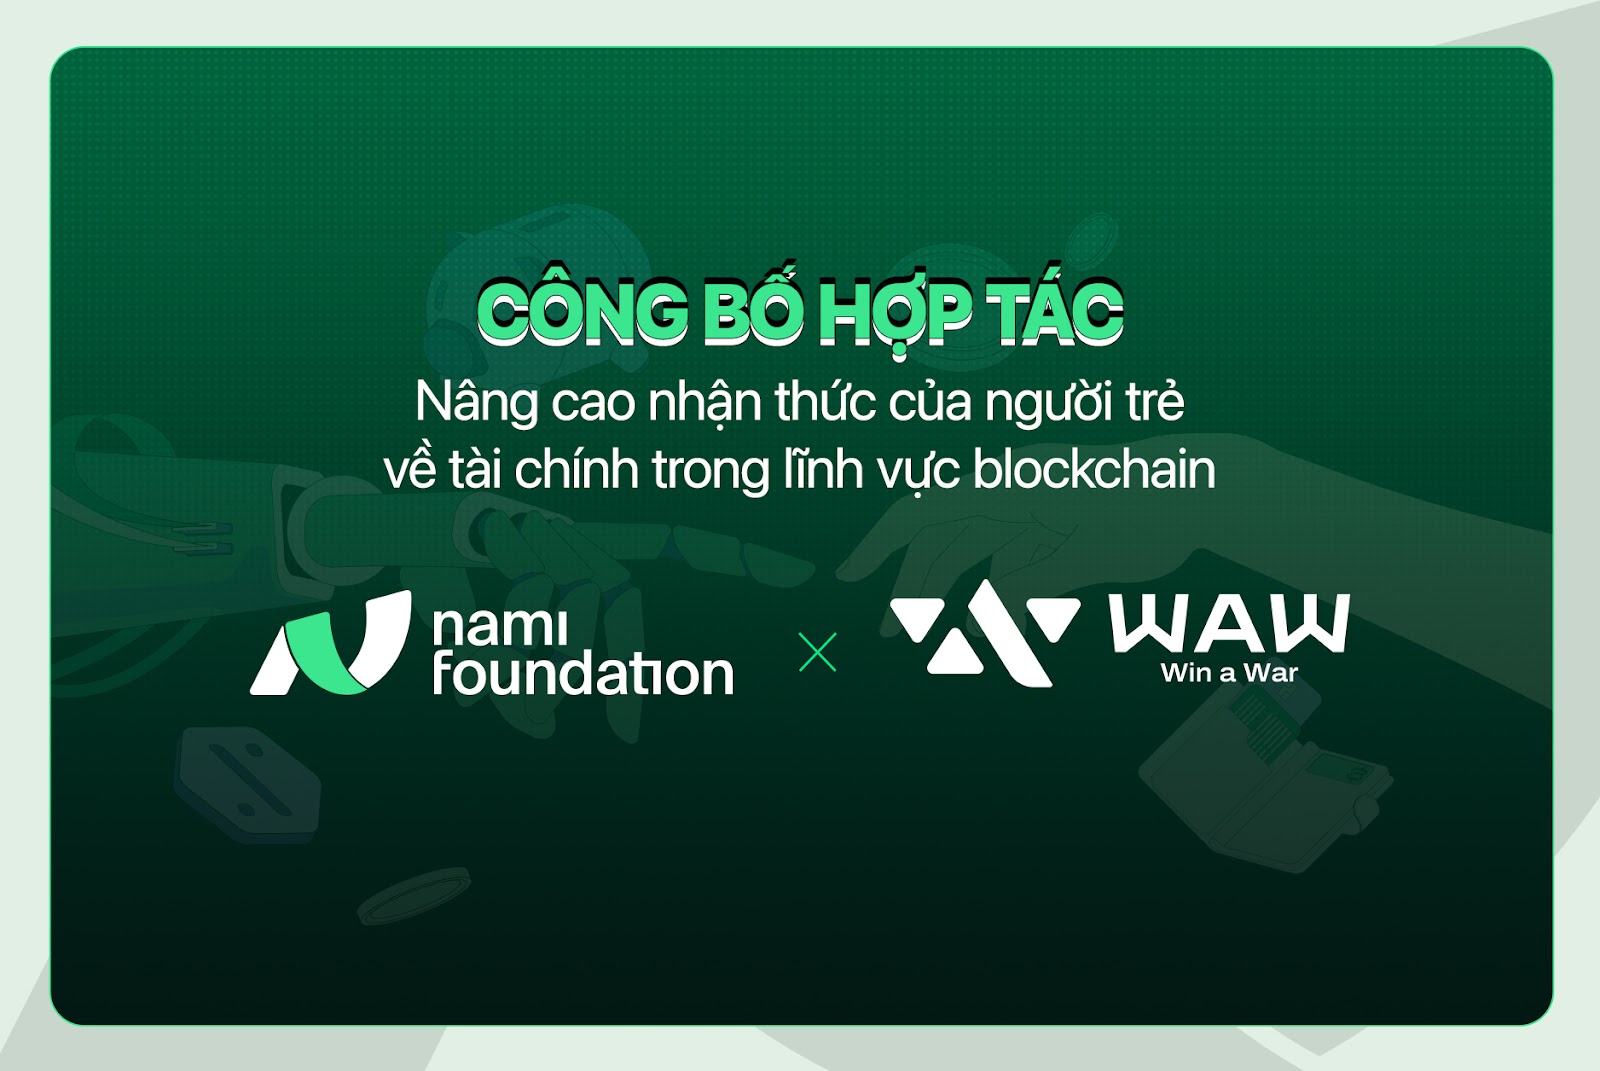 Nami Foundation nâng cao nhận thức của người trẻ về tài chính trong lĩnh vực Blockchain.